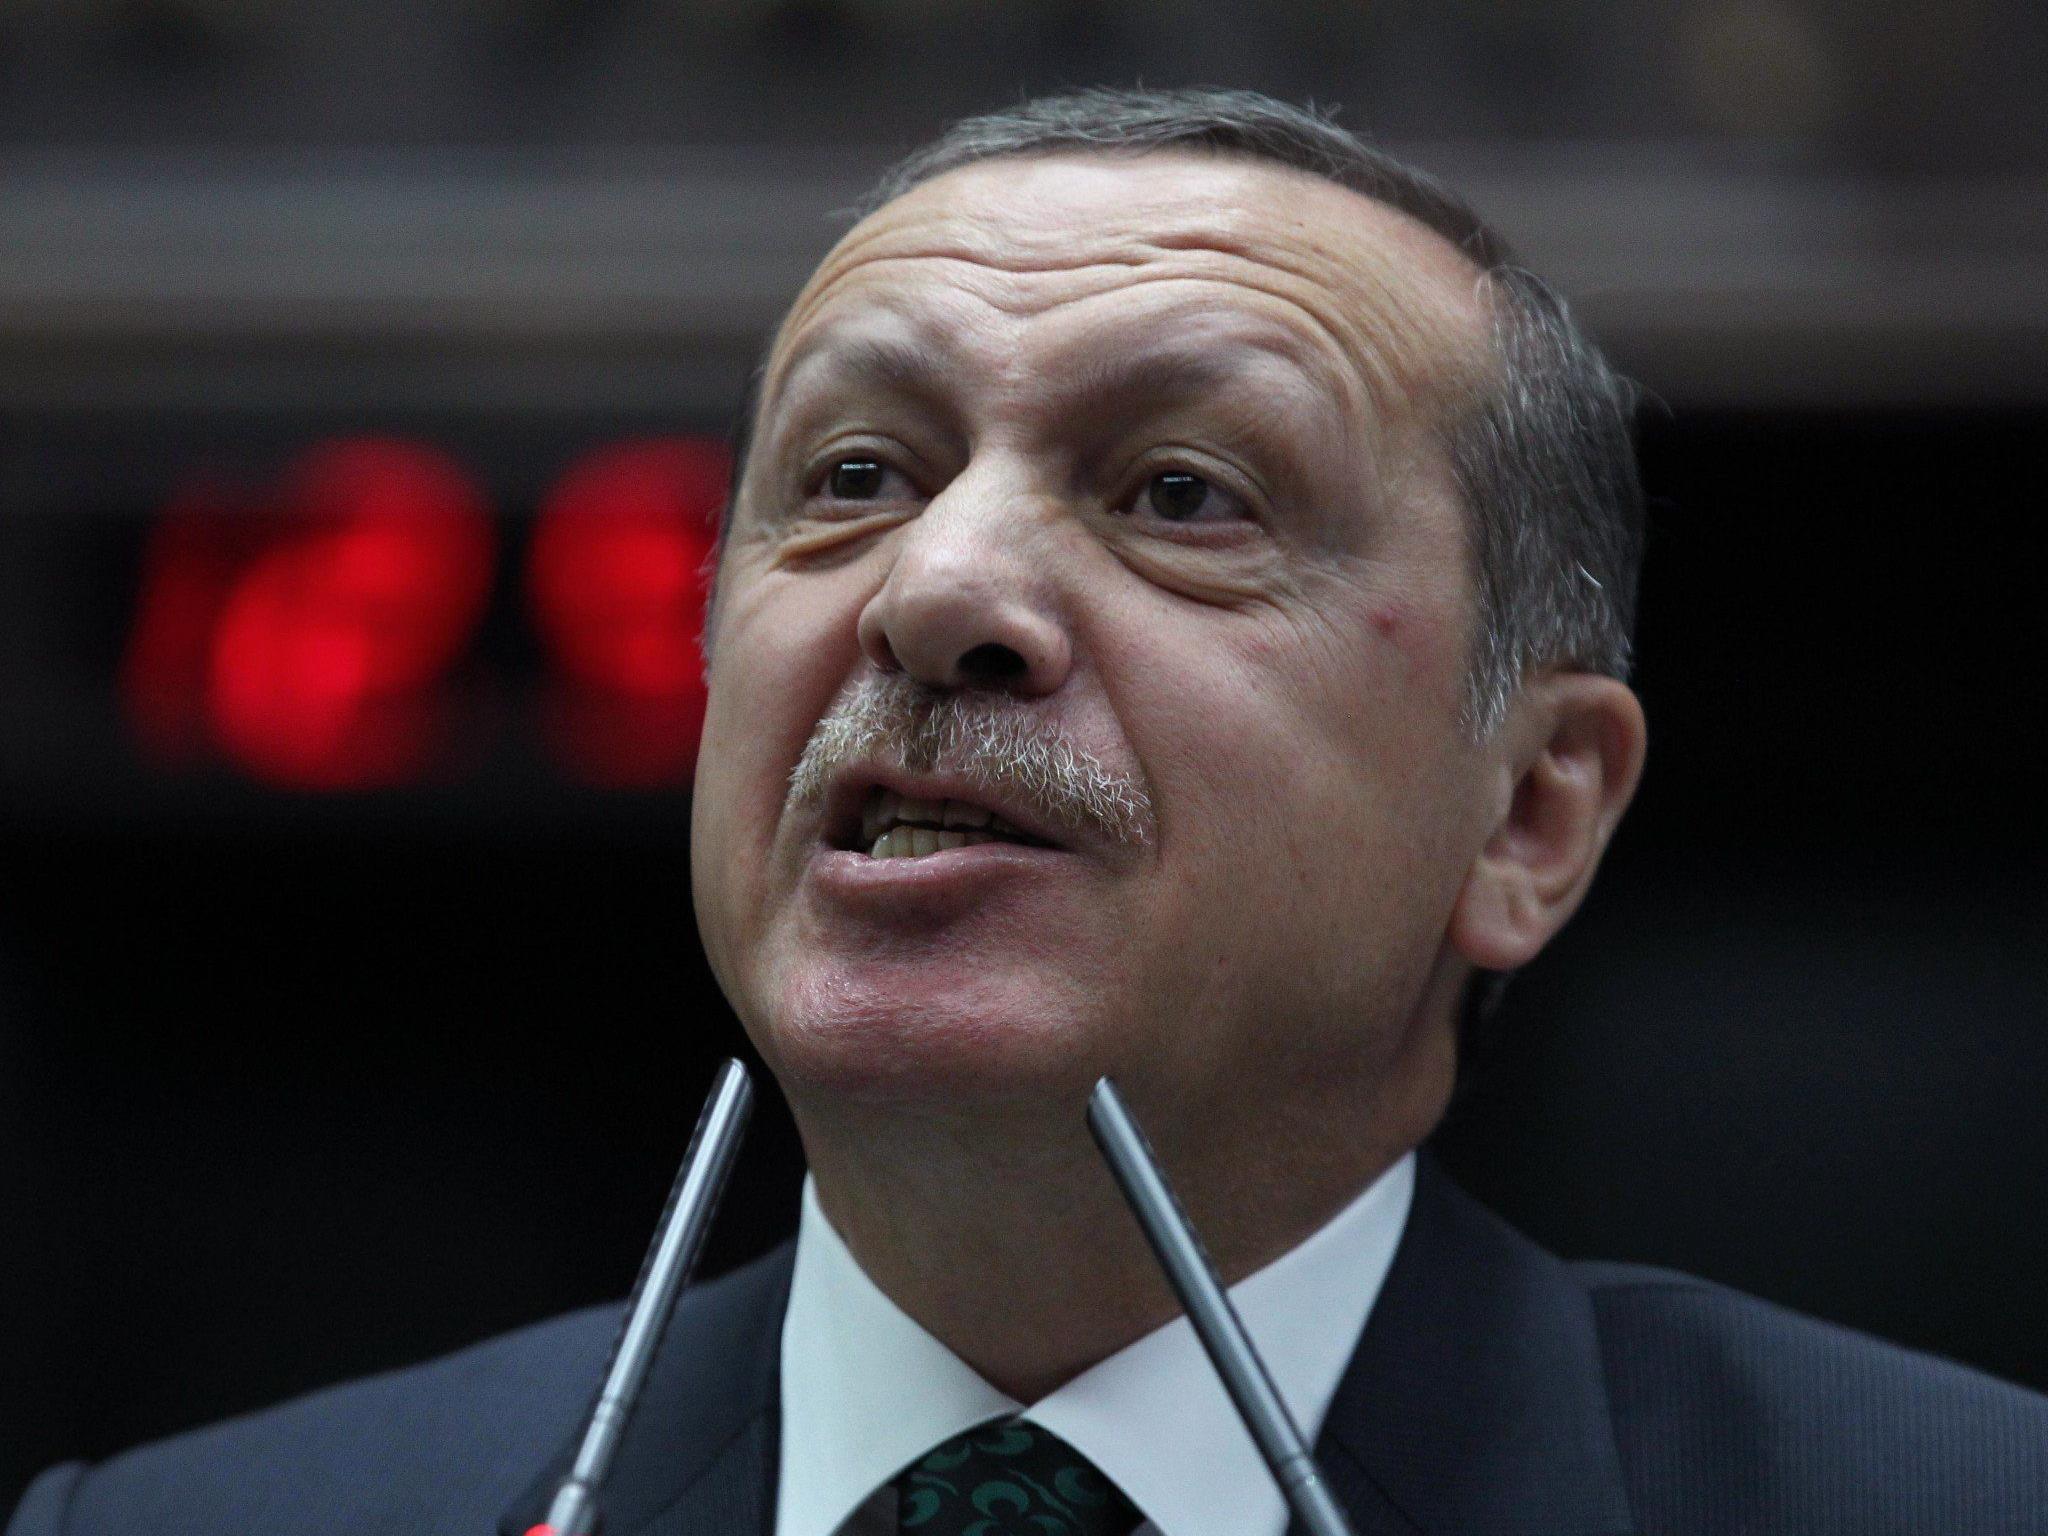 "Wir müssen unsere Nation unterstützen", so Erdogan bei seiner Rede.